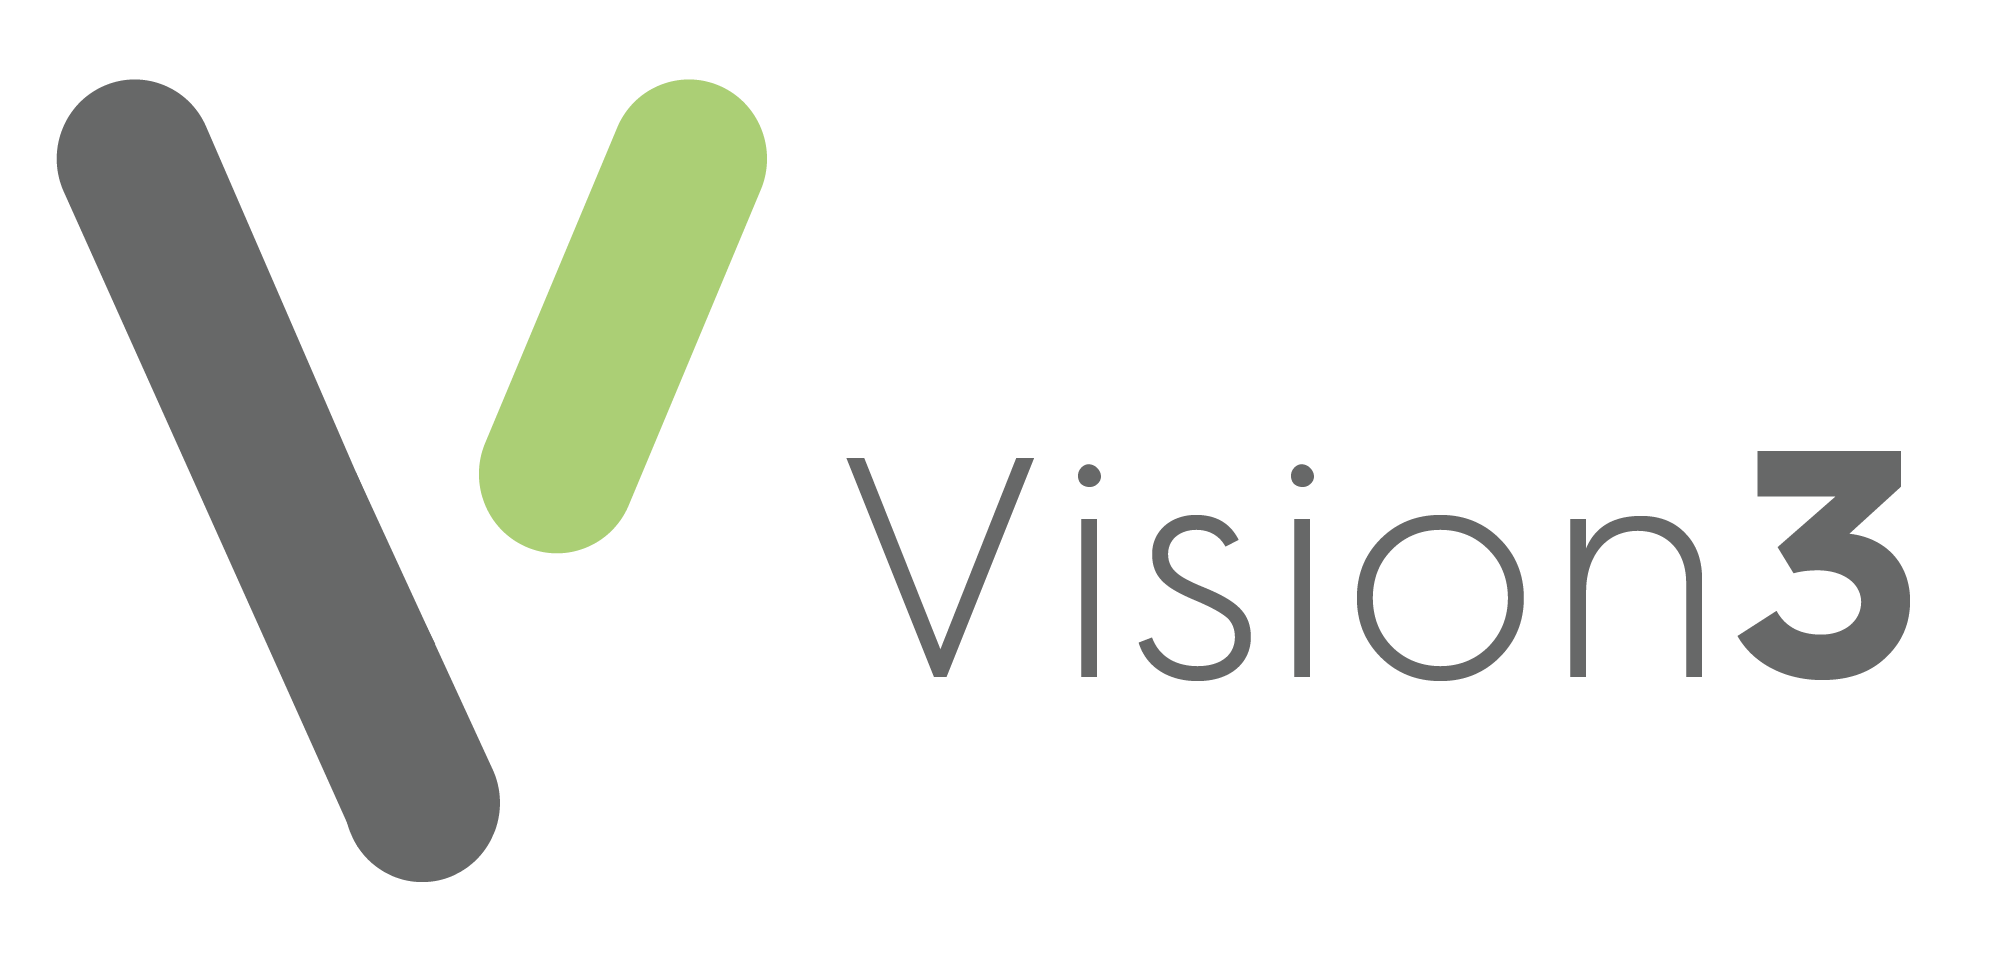 Vision 3 logo